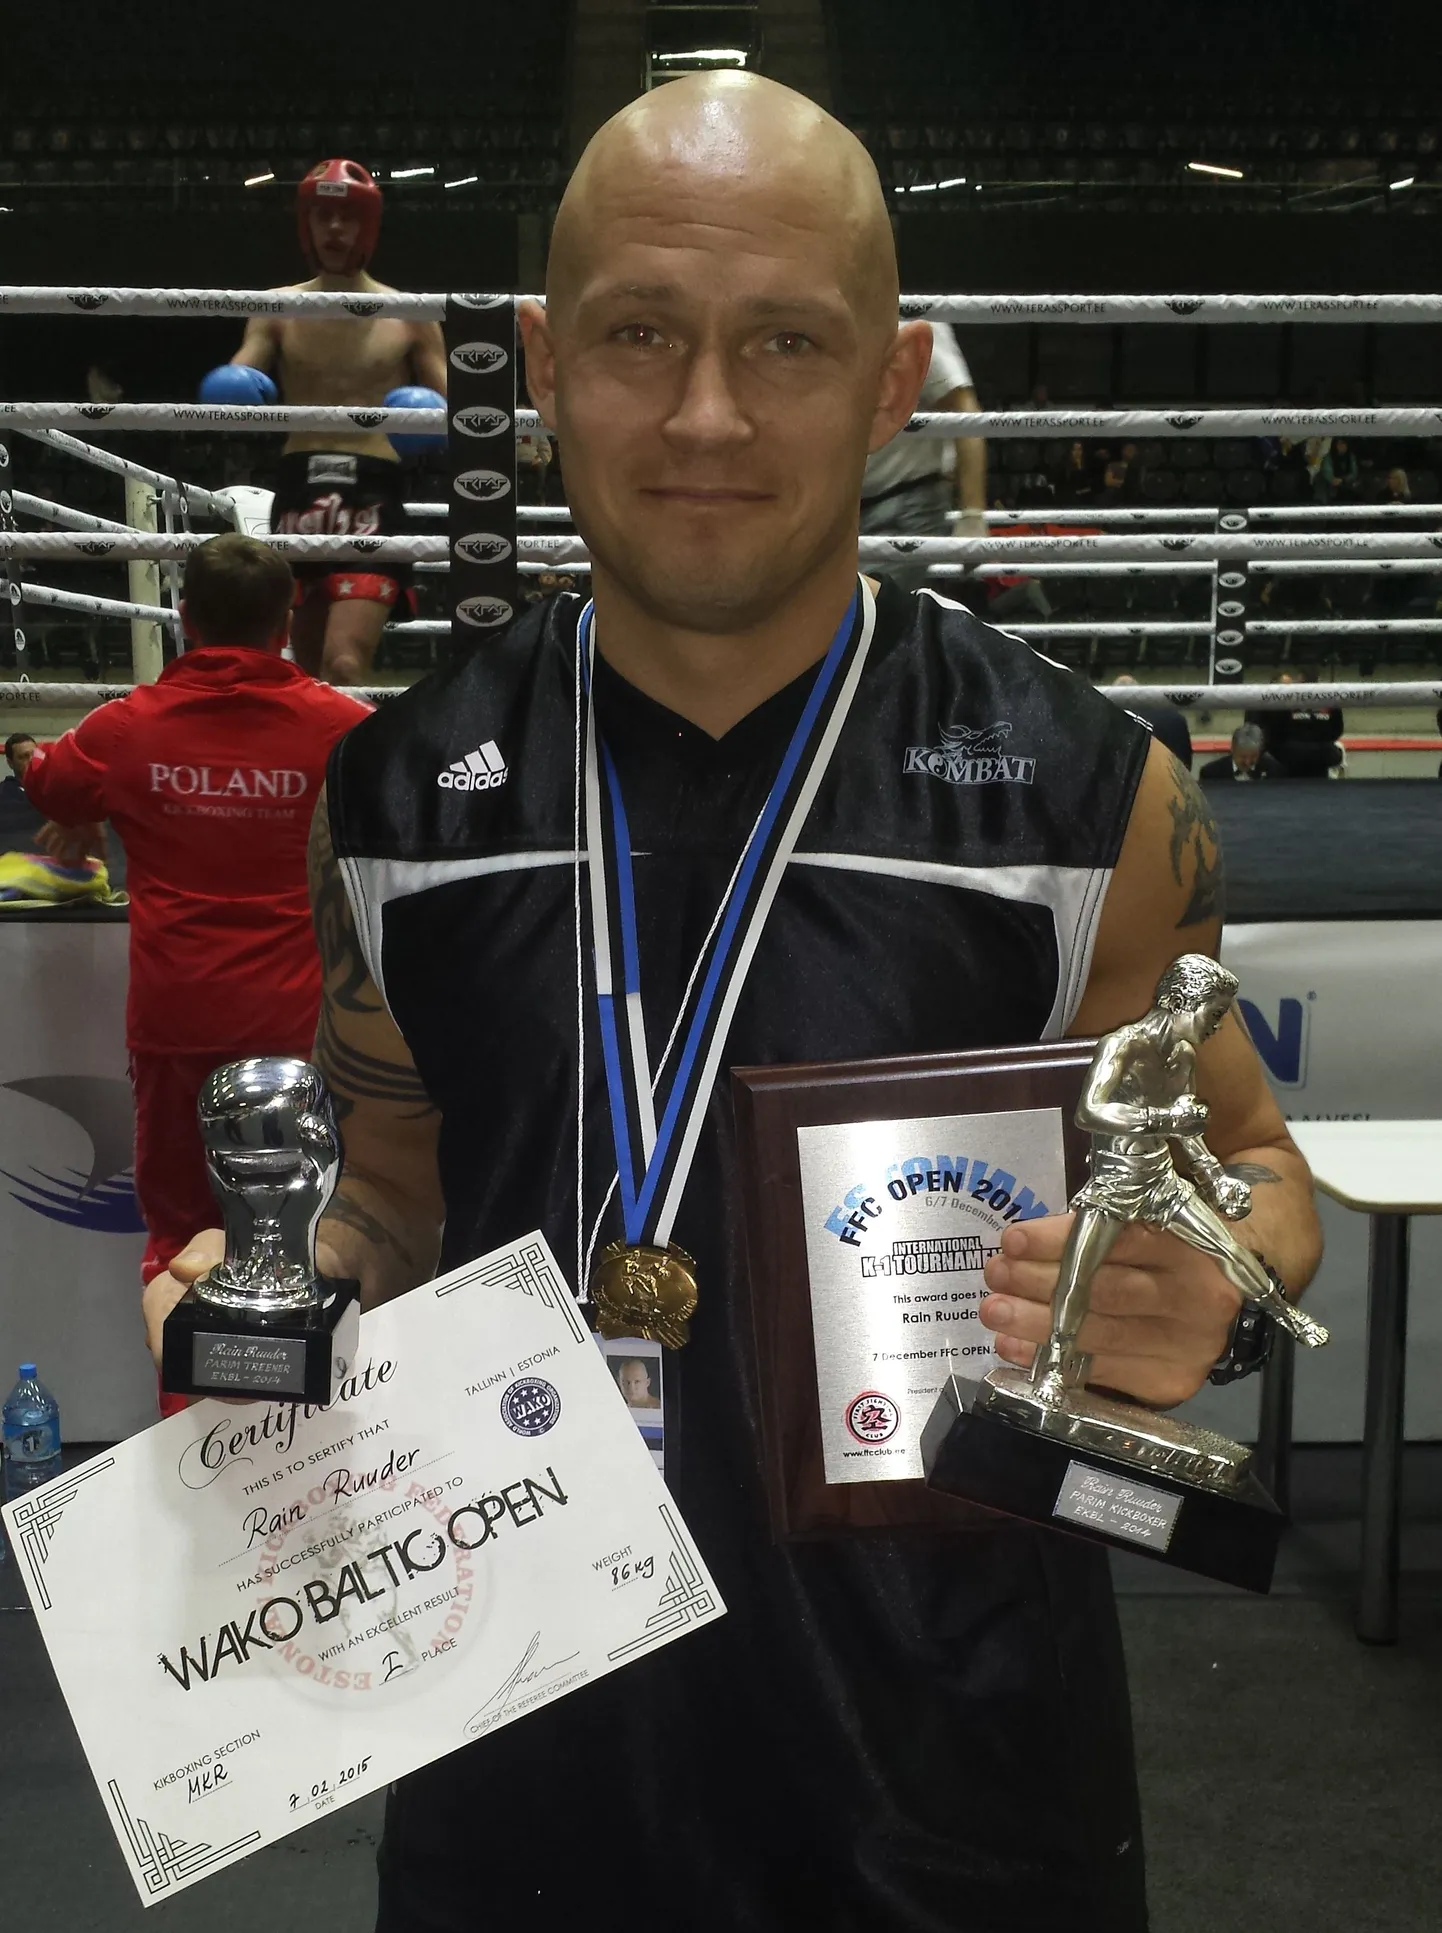 Eesti Kickboxingu Liidu parimaks sportlaseks ja treeneriks ühtaegu valiti Tartu Kombati spordiklubi peatreener Rain Ruuder.